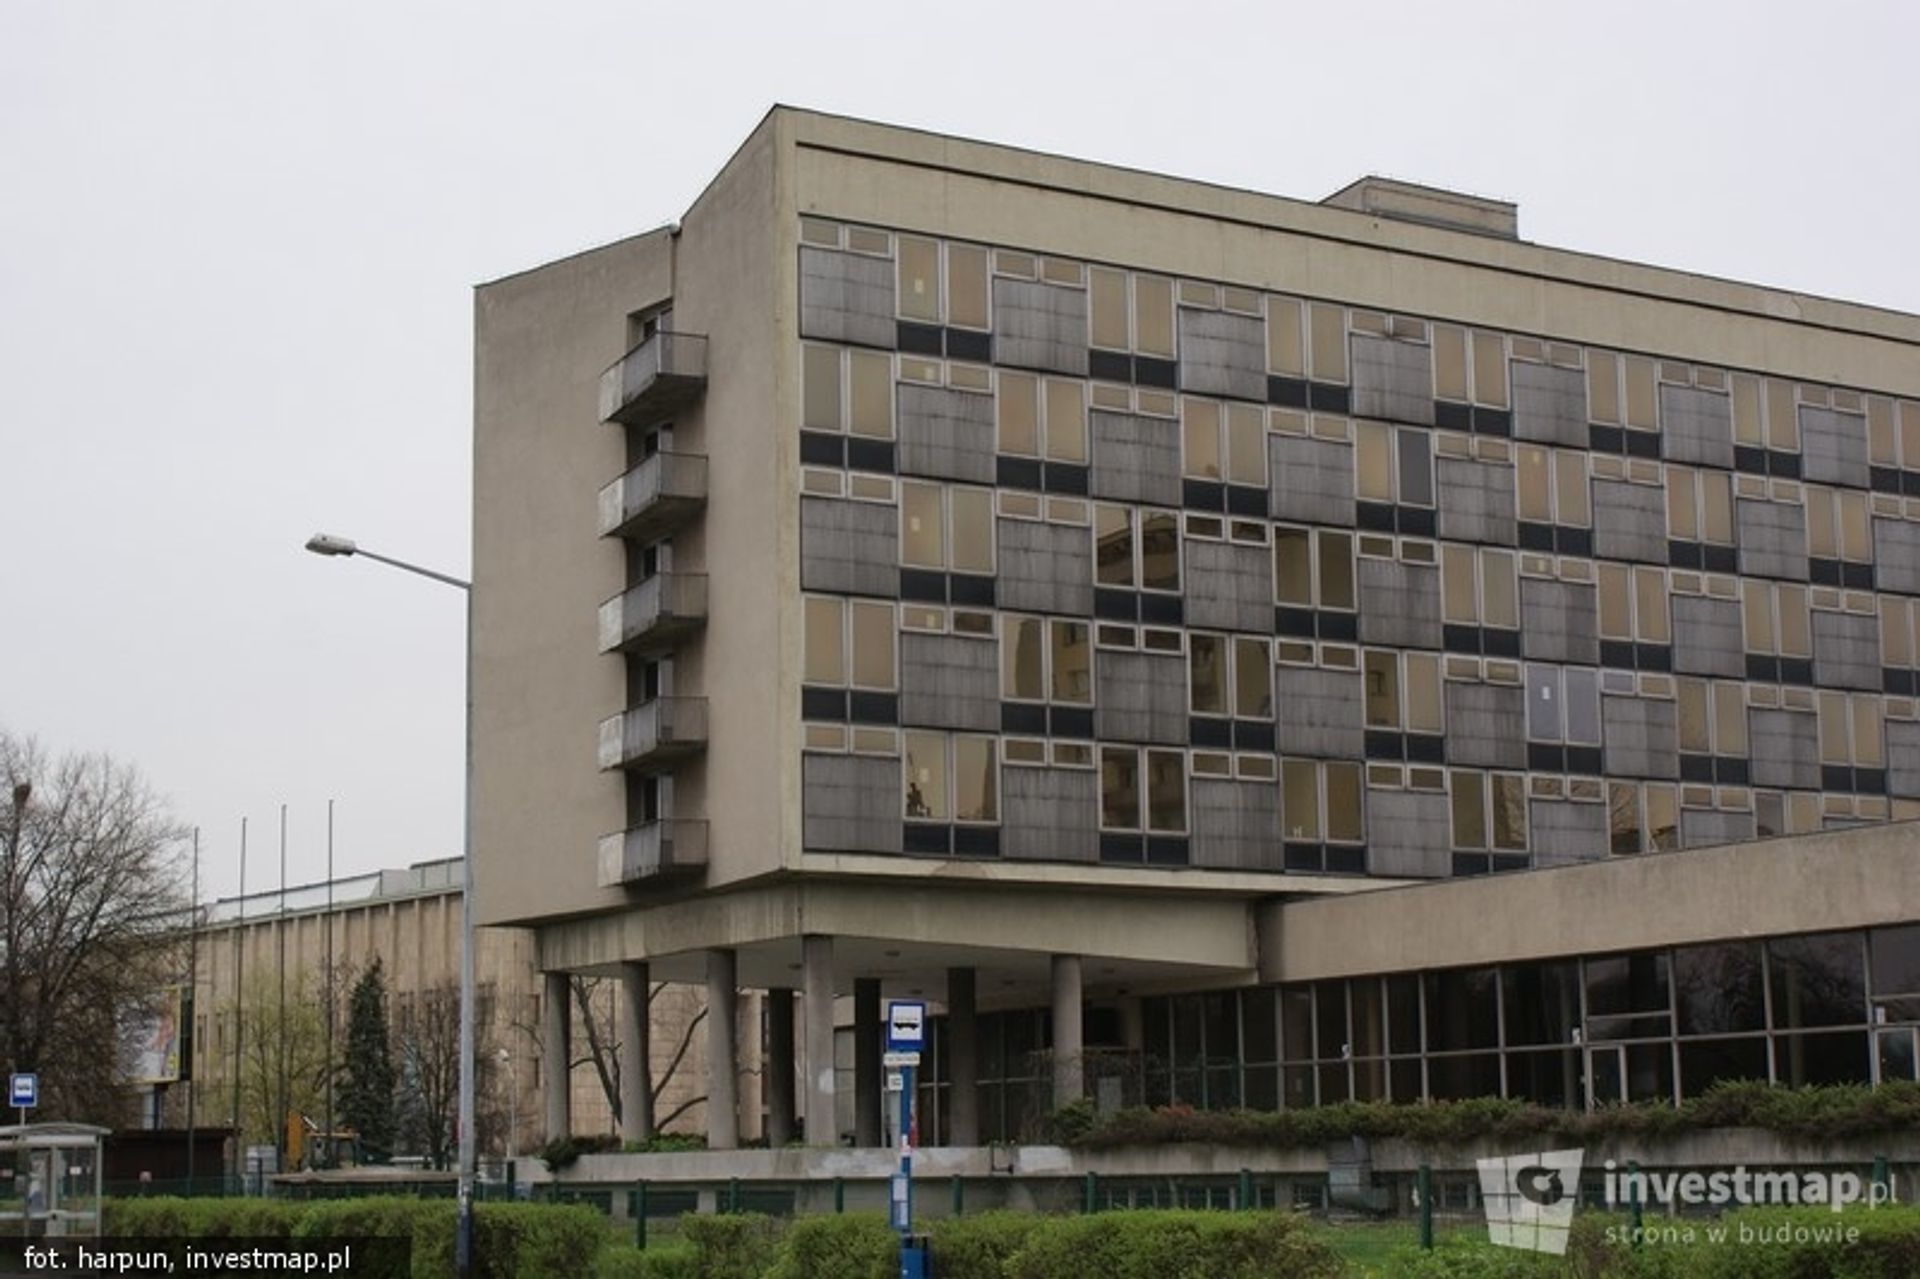  Decyzja w sprawie hotelu Cracovia pod koniec września